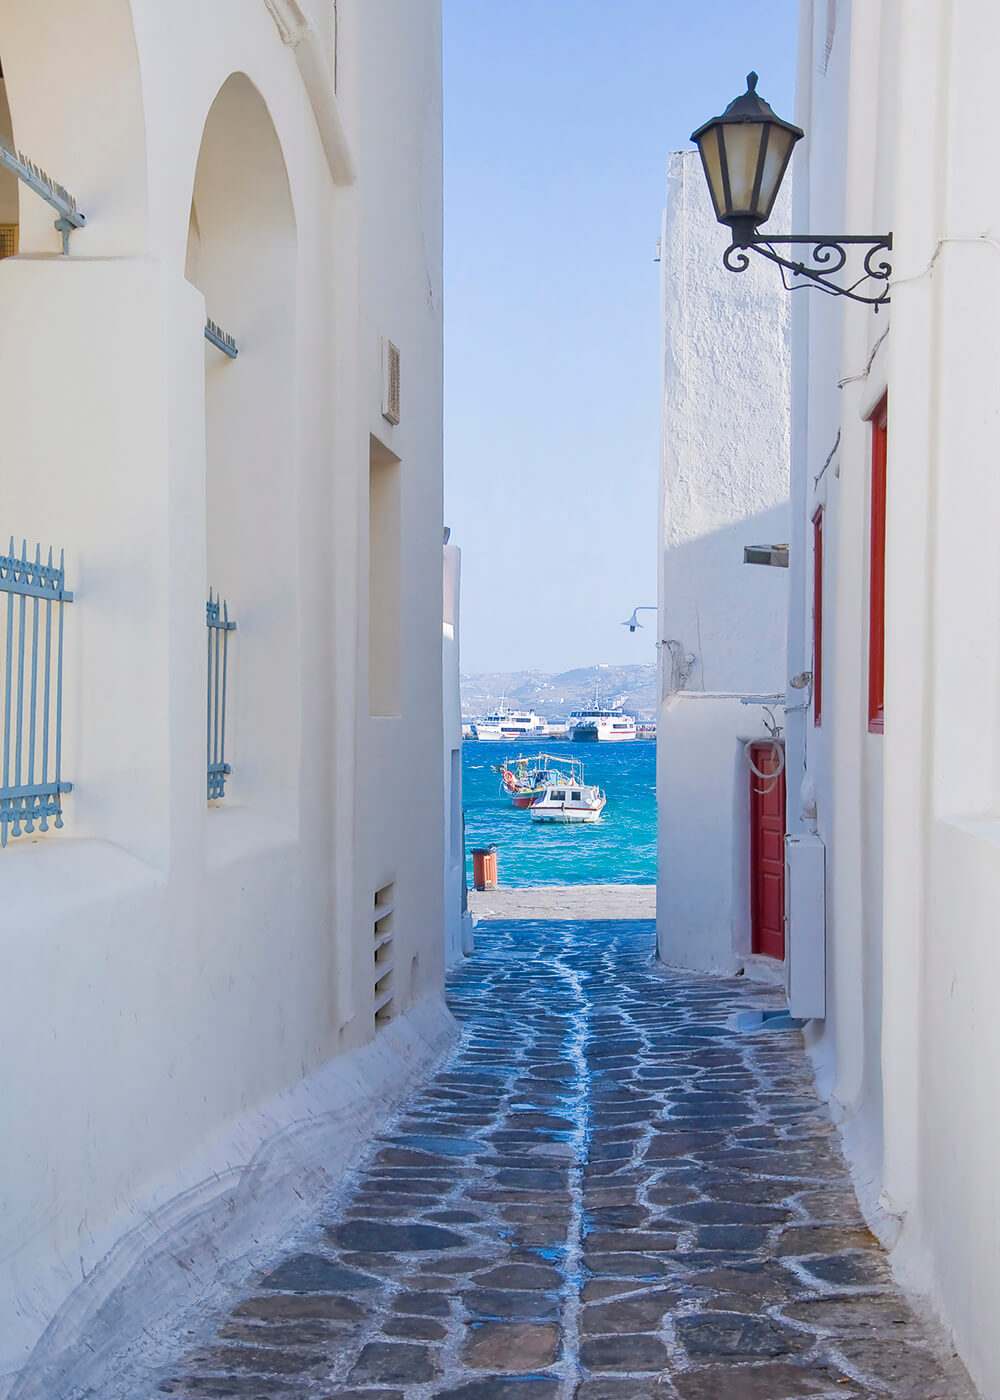 Переулок в Греции (ширина: 2000 мм, высота: 2800 мм, количество полос: 2)